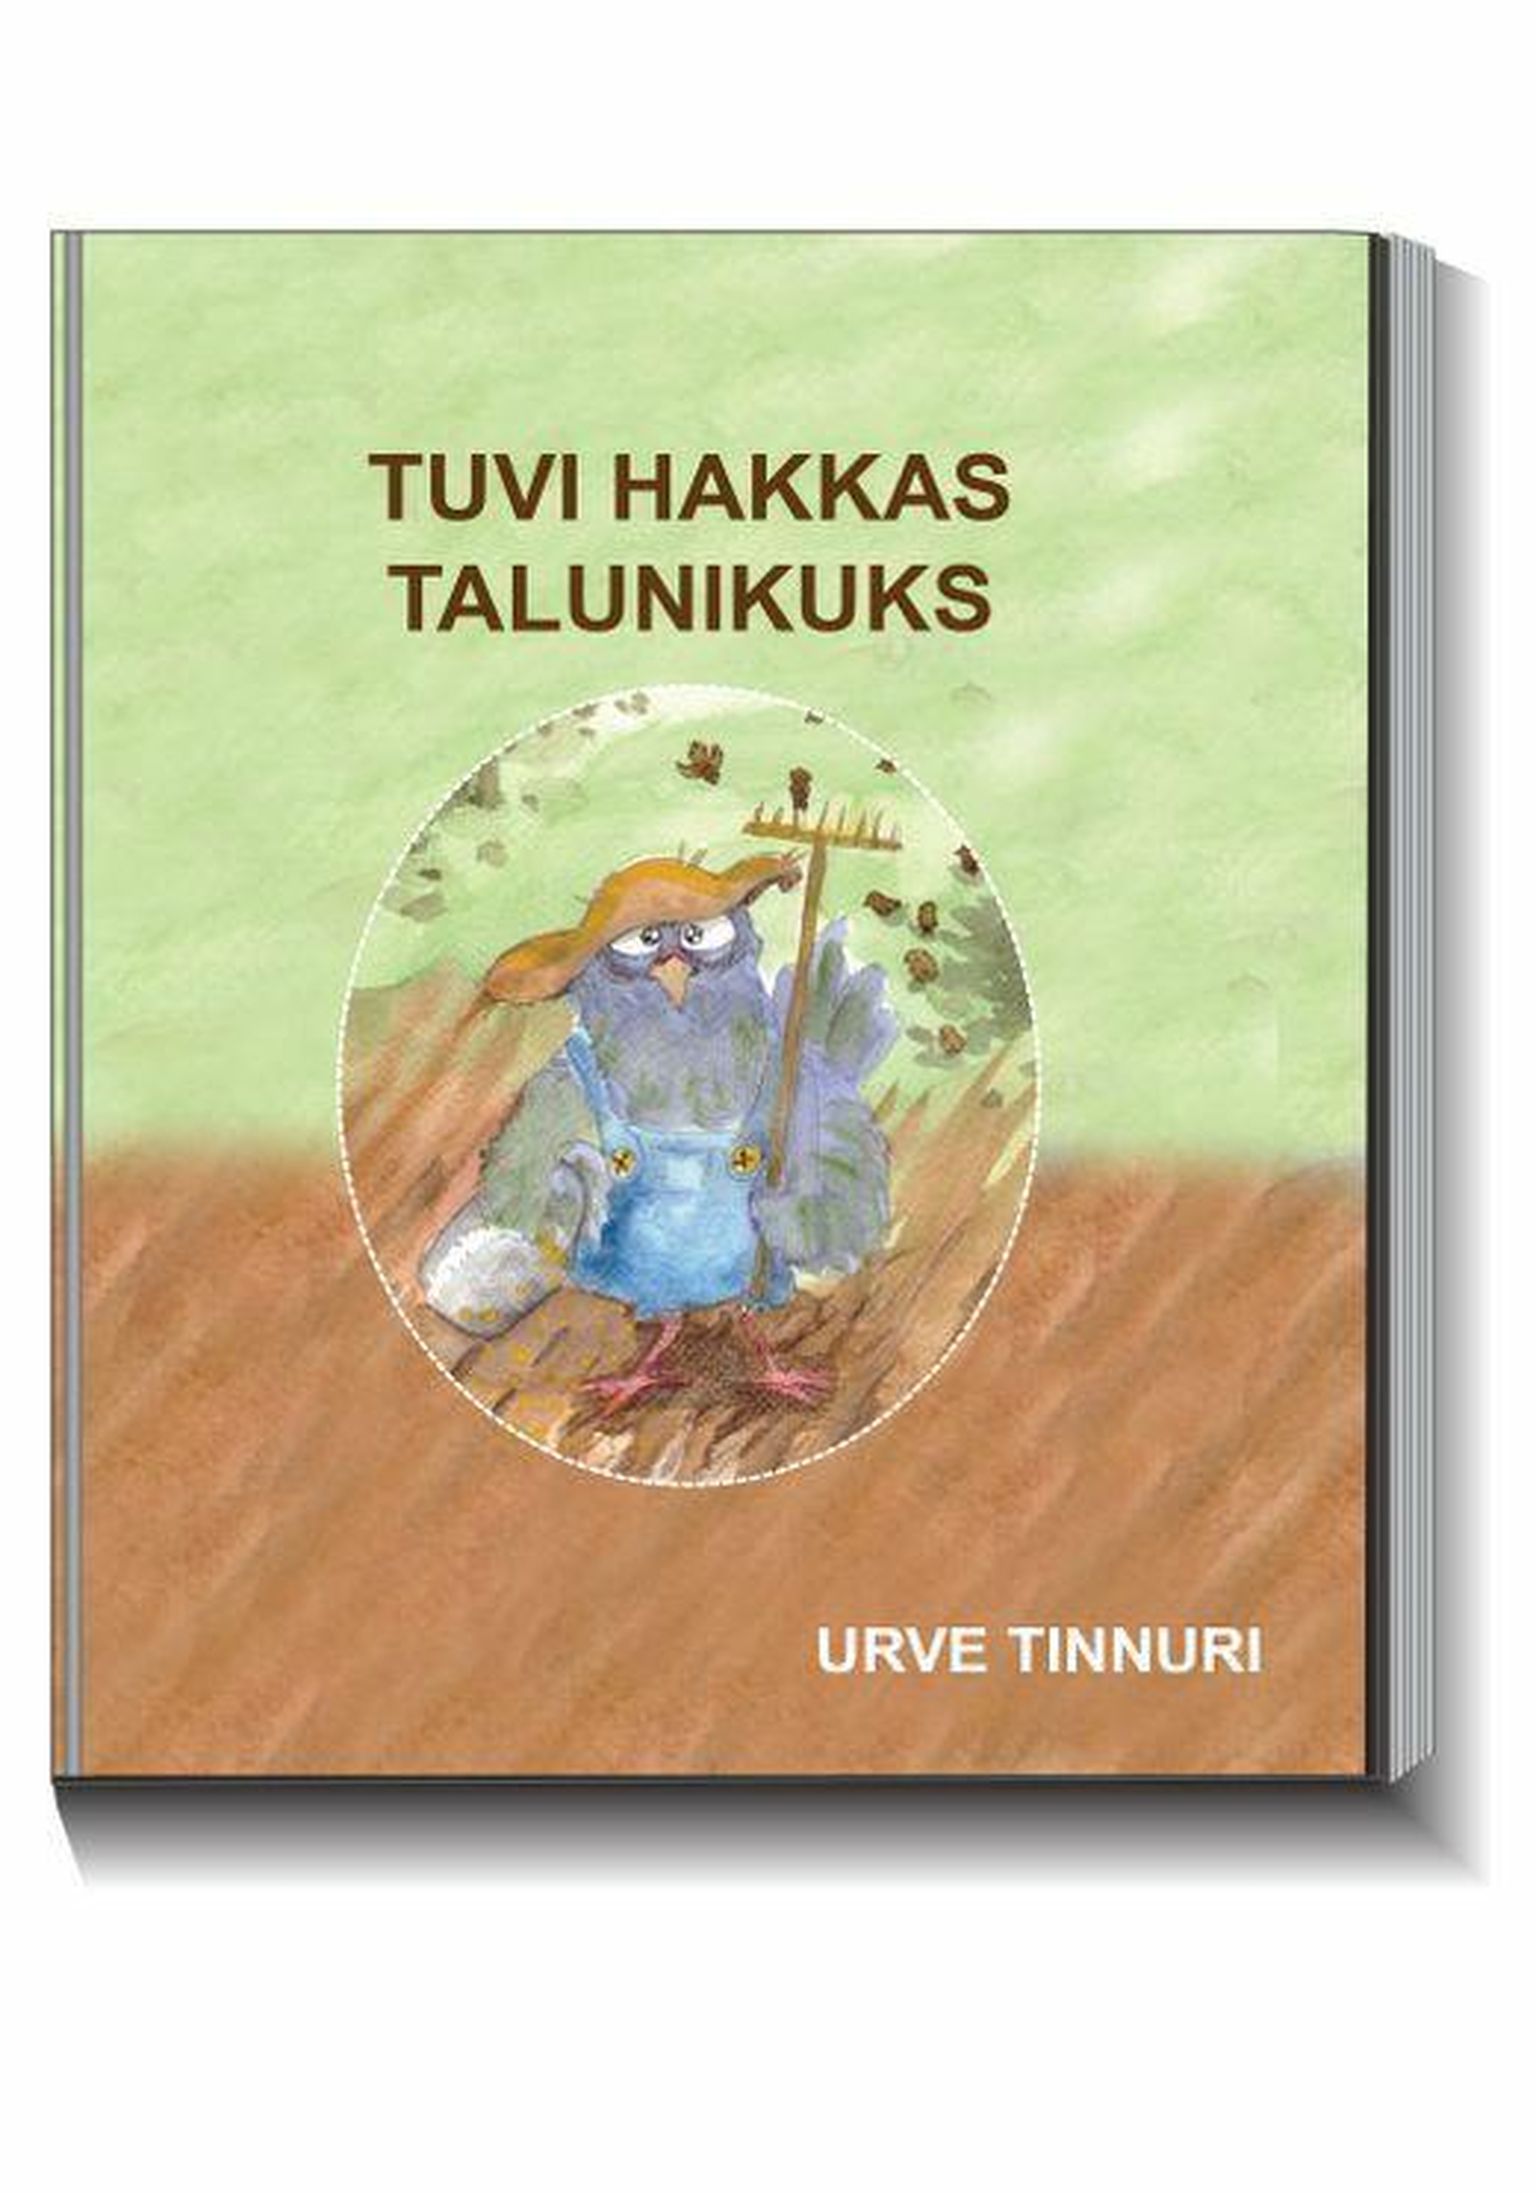 Urve Tinnuri avaldas põnevate tegelastega luuleraamatu "Tuvi hakkas talunikuks".